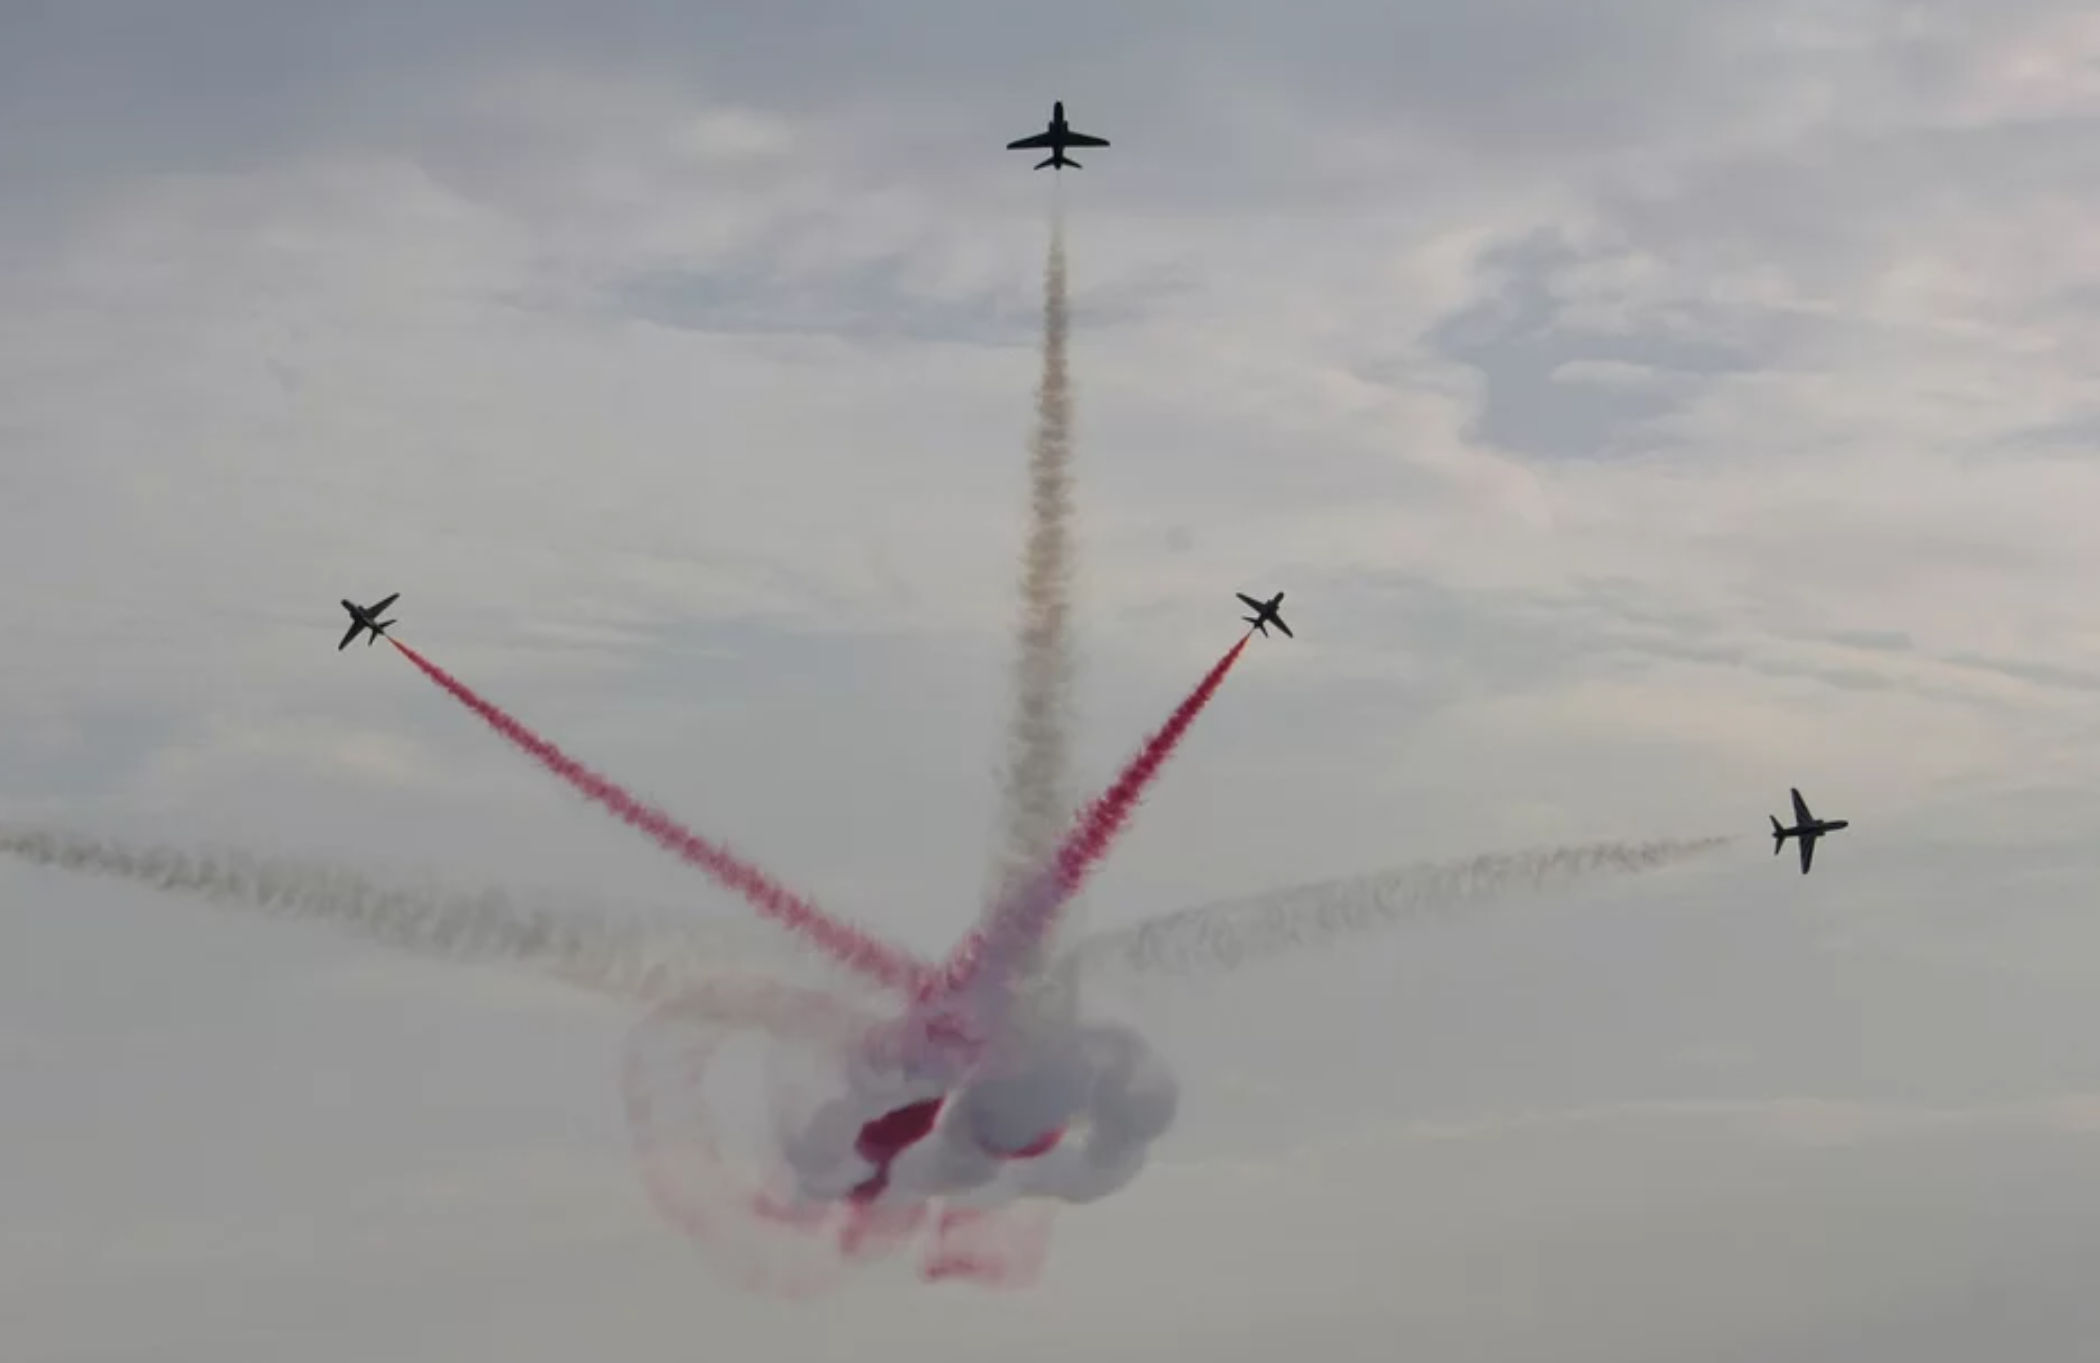 Πότε και που θα πραγματοποιηθεί η εντυπωσιακή αεροπορική επίδειξη για τη γιορτή της Πολεμικής Αεροπορίας